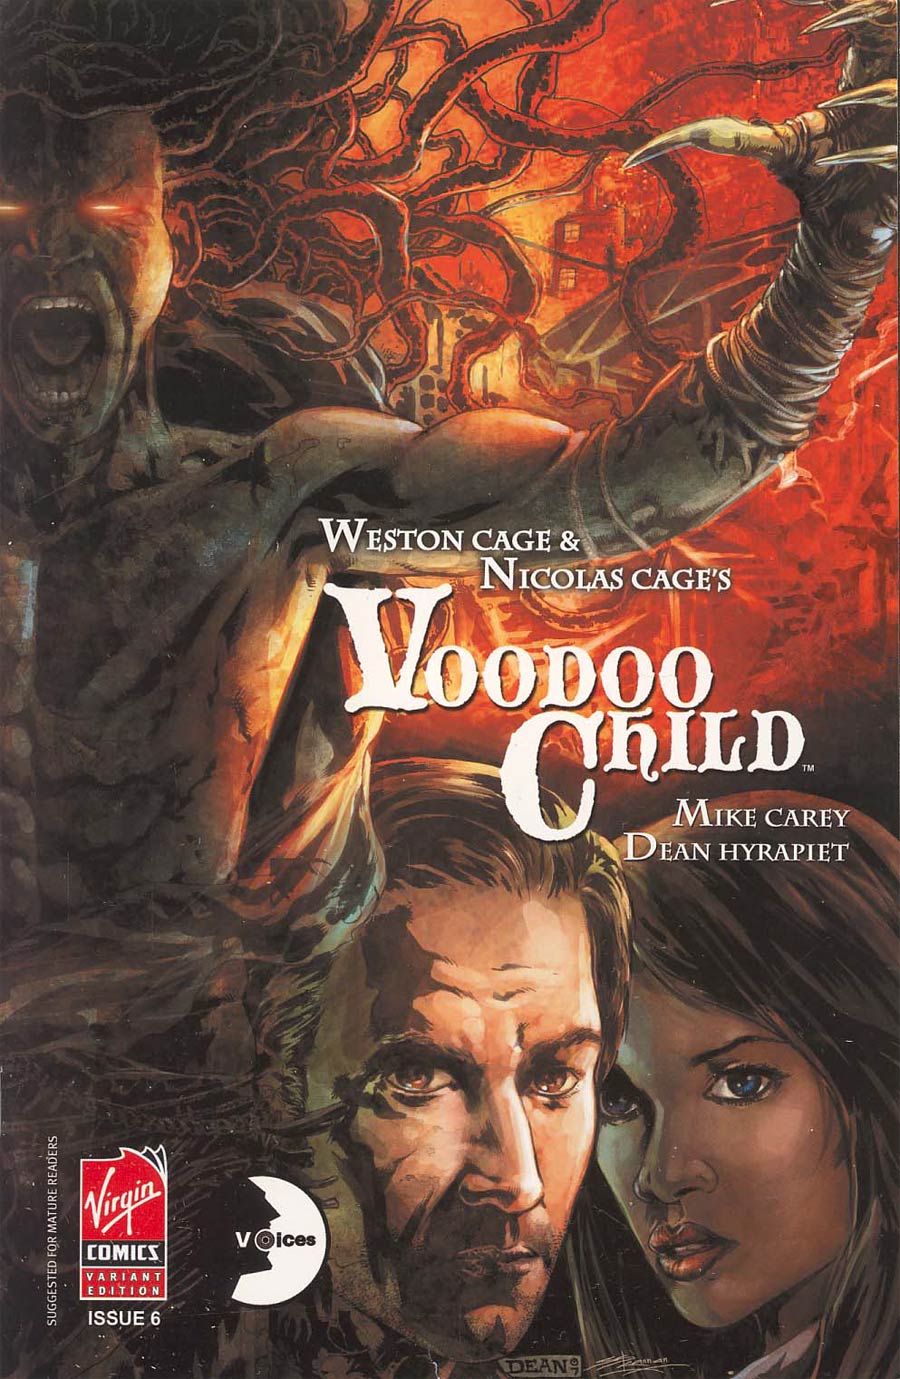 Nicolas Cages Voodoo Child #6 Dean Hyrapiet Cover